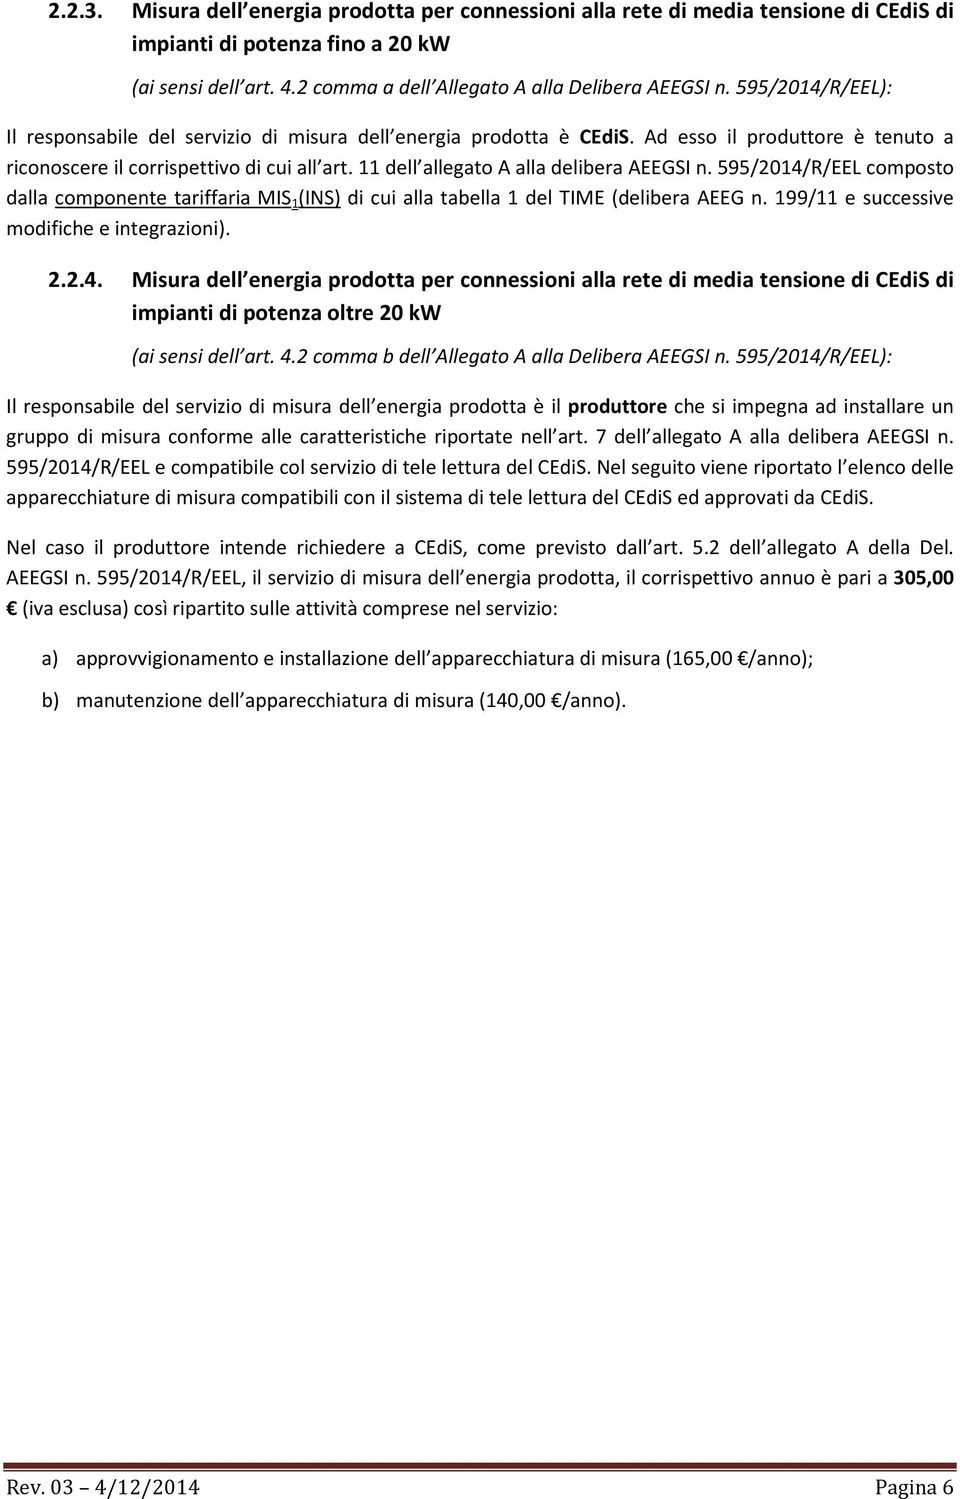 11 dell allegato A alla delibera AEEGSI n. 595/2014/R/EEL composto dalla componente tariffaria MIS 1 (INS) di cui alla tabella 1 del TIME (delibera AEEG n.